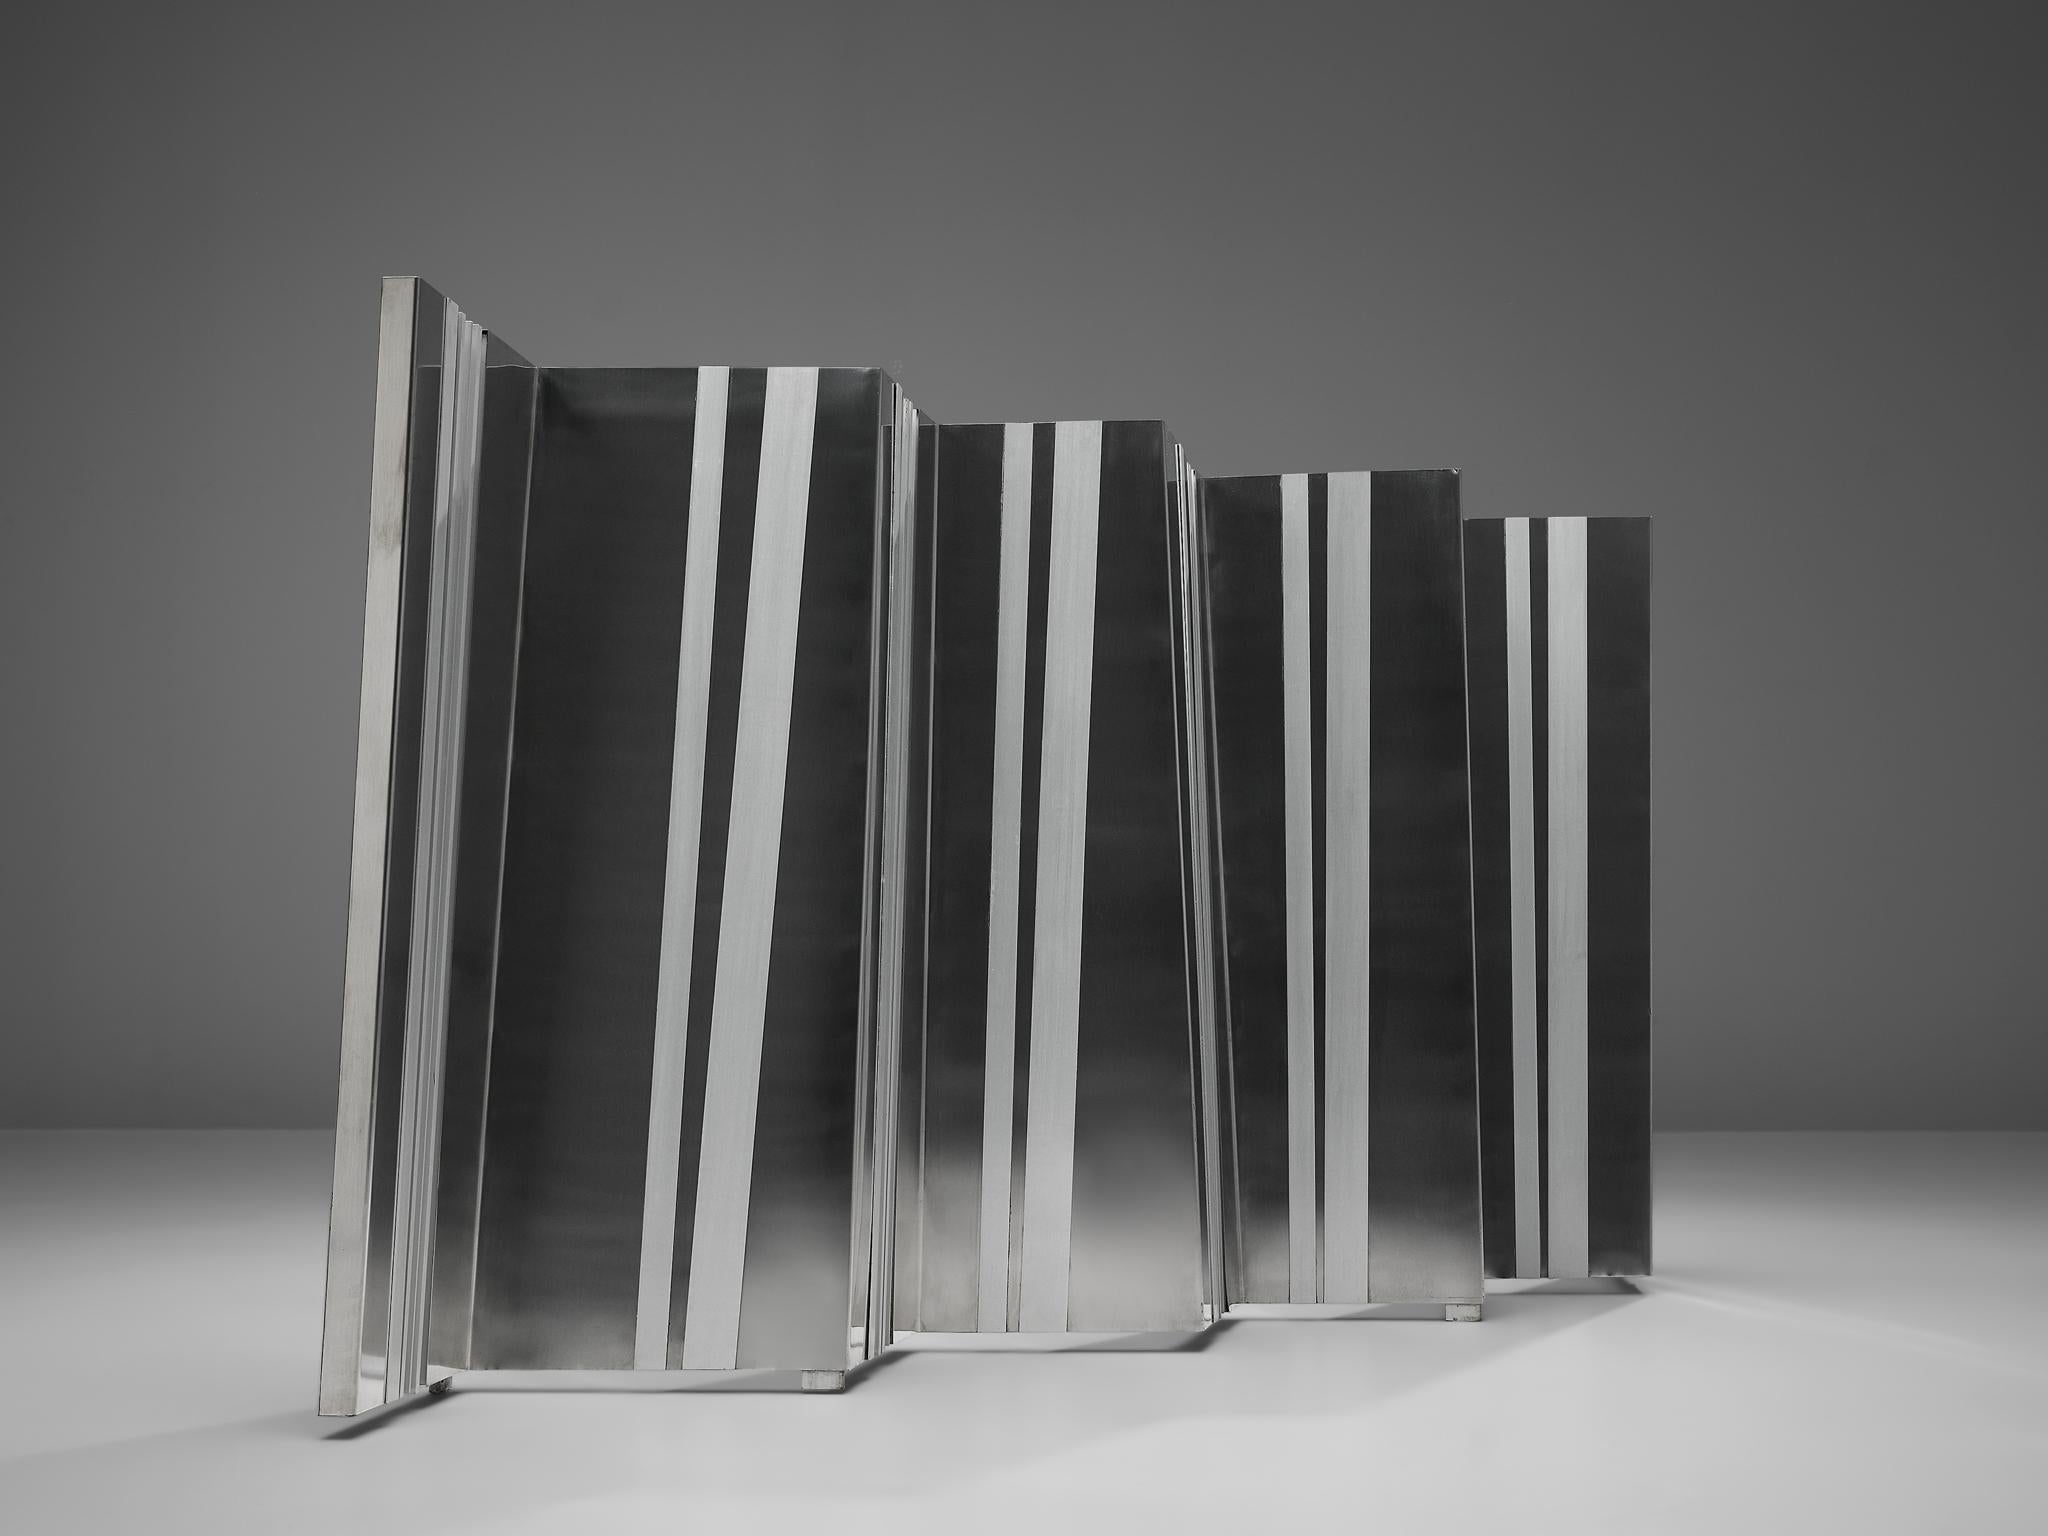 Salvatore Messina, Skulptur, Aluminium, Italien, 1960

Salvatore Messina (1916-1982) beschäftigte sich in seinen Metallskulpturen mit der Frage der Bewegung und dem Konzept des Raums. Die Dreidimensionalität dieser Skulptur wird durch die in